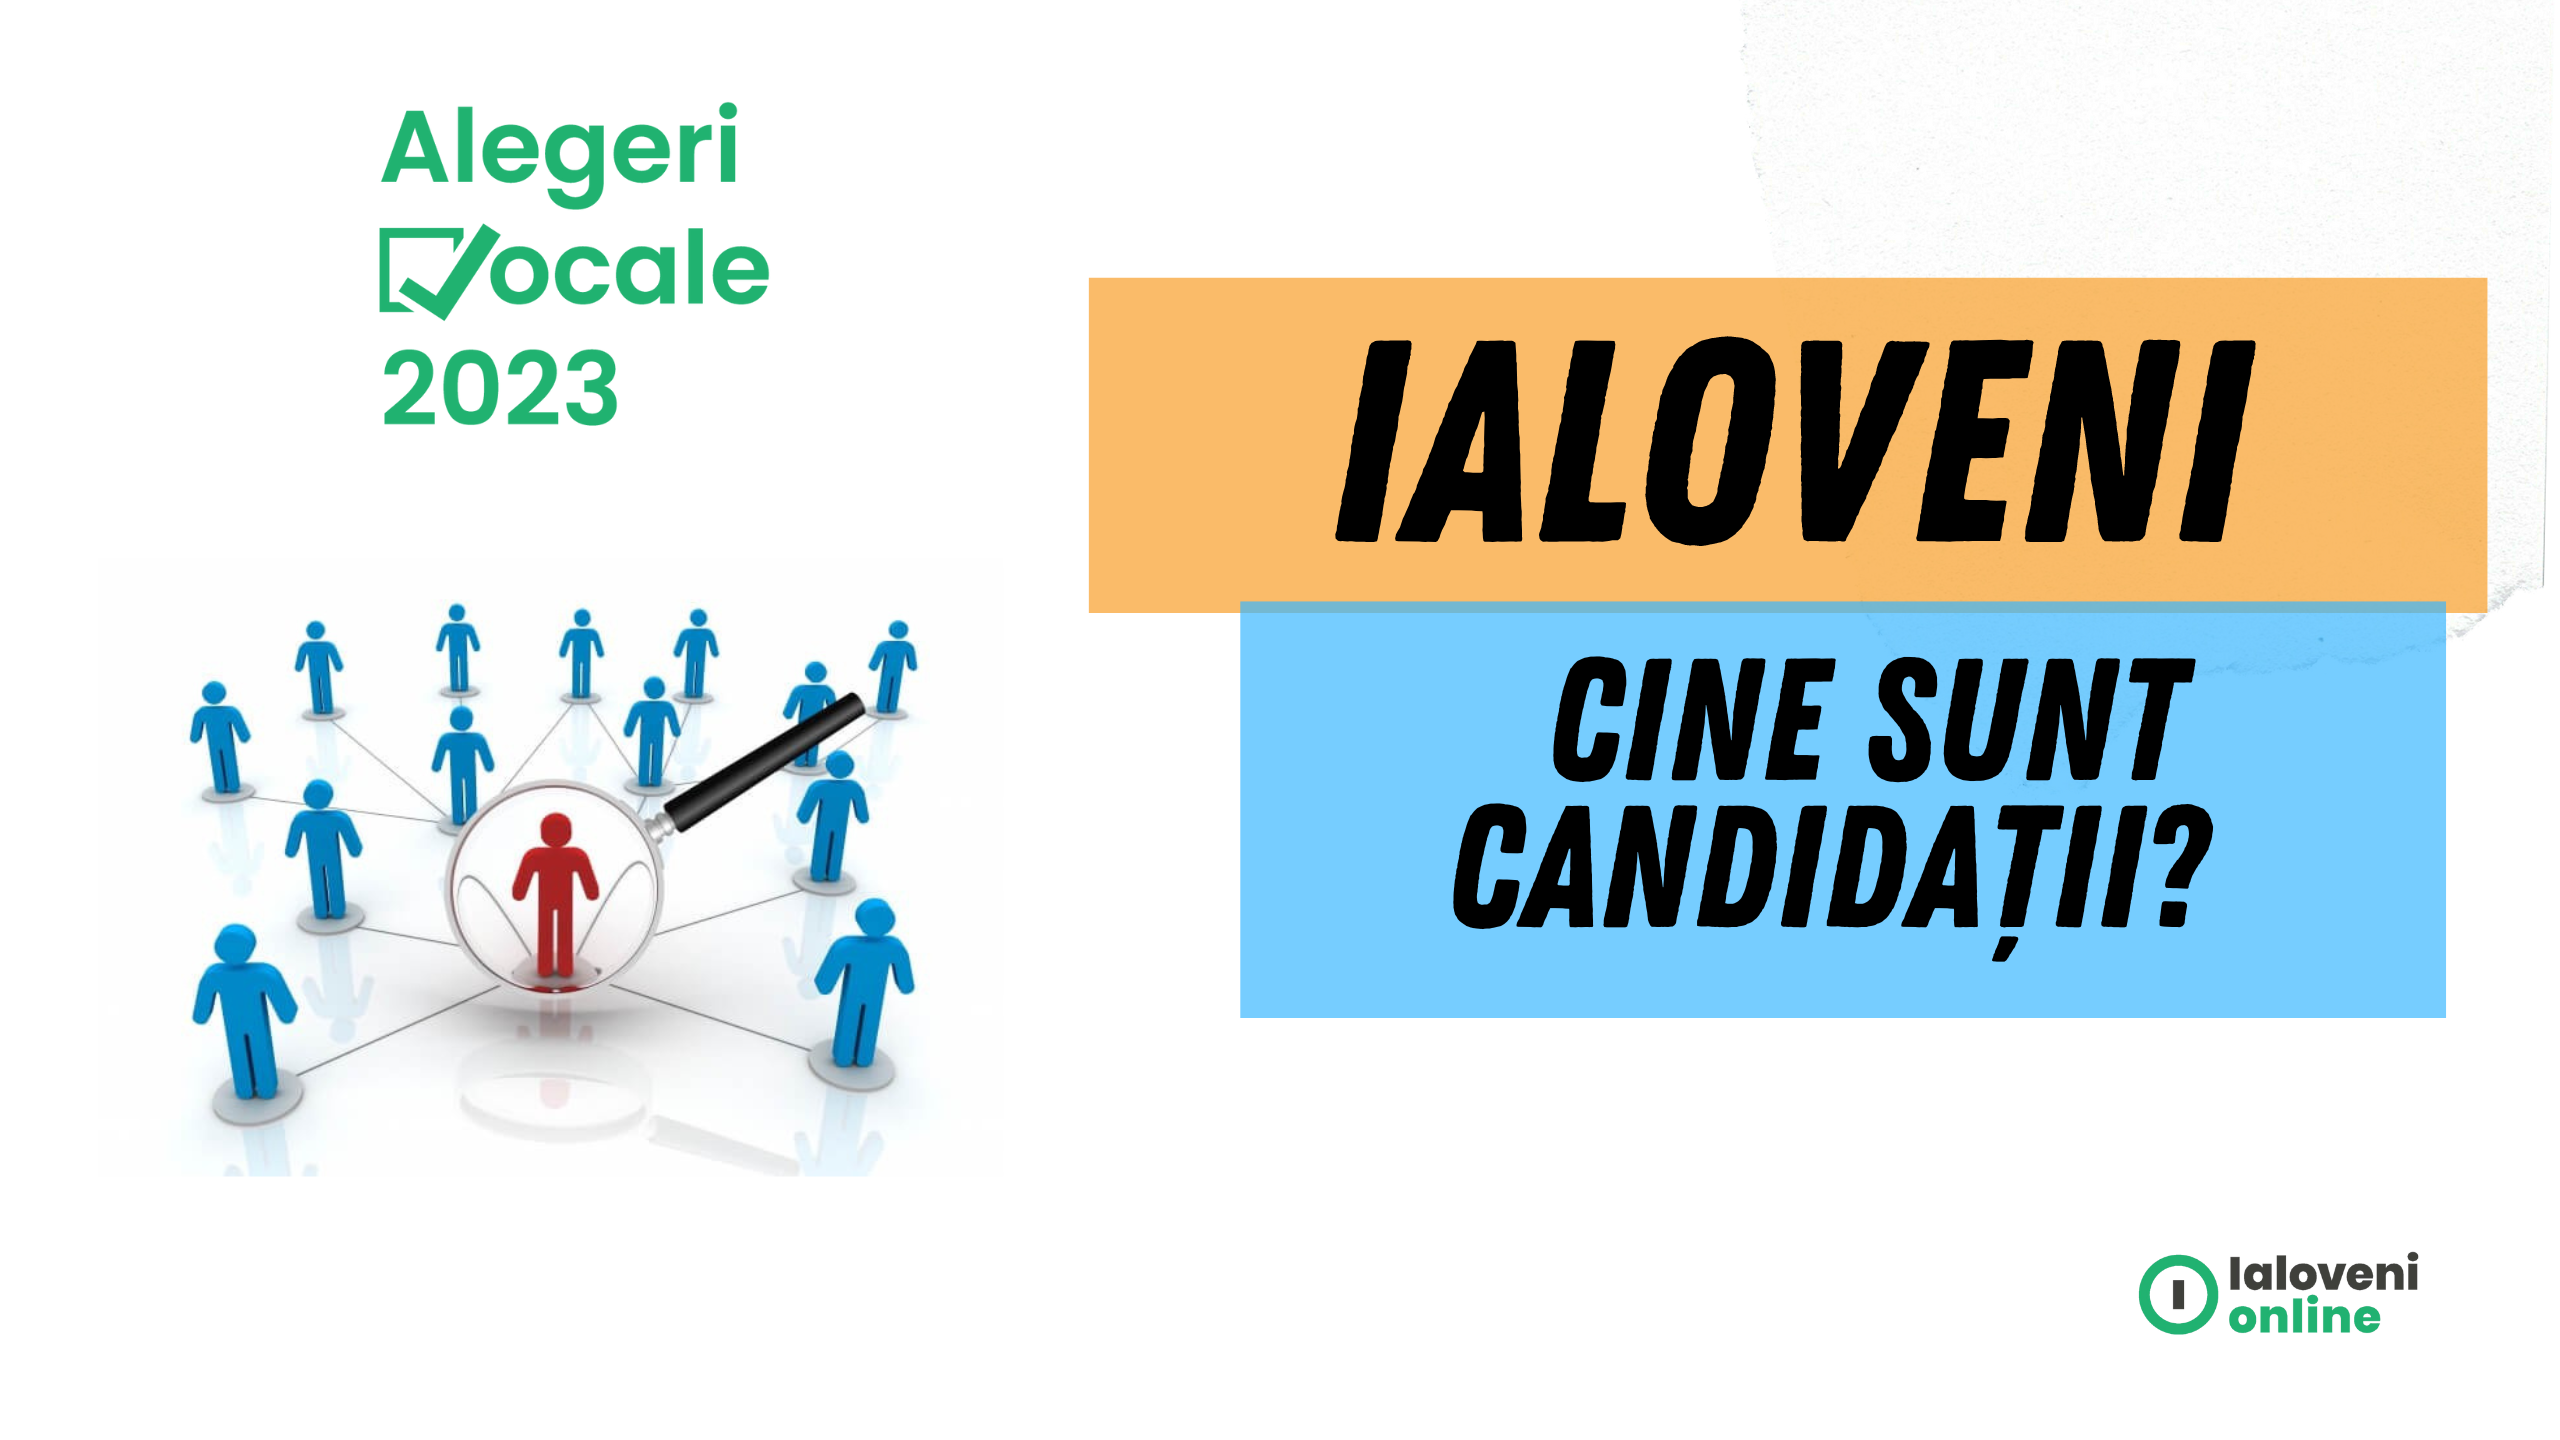 alegerilocale Ialoveni 2023